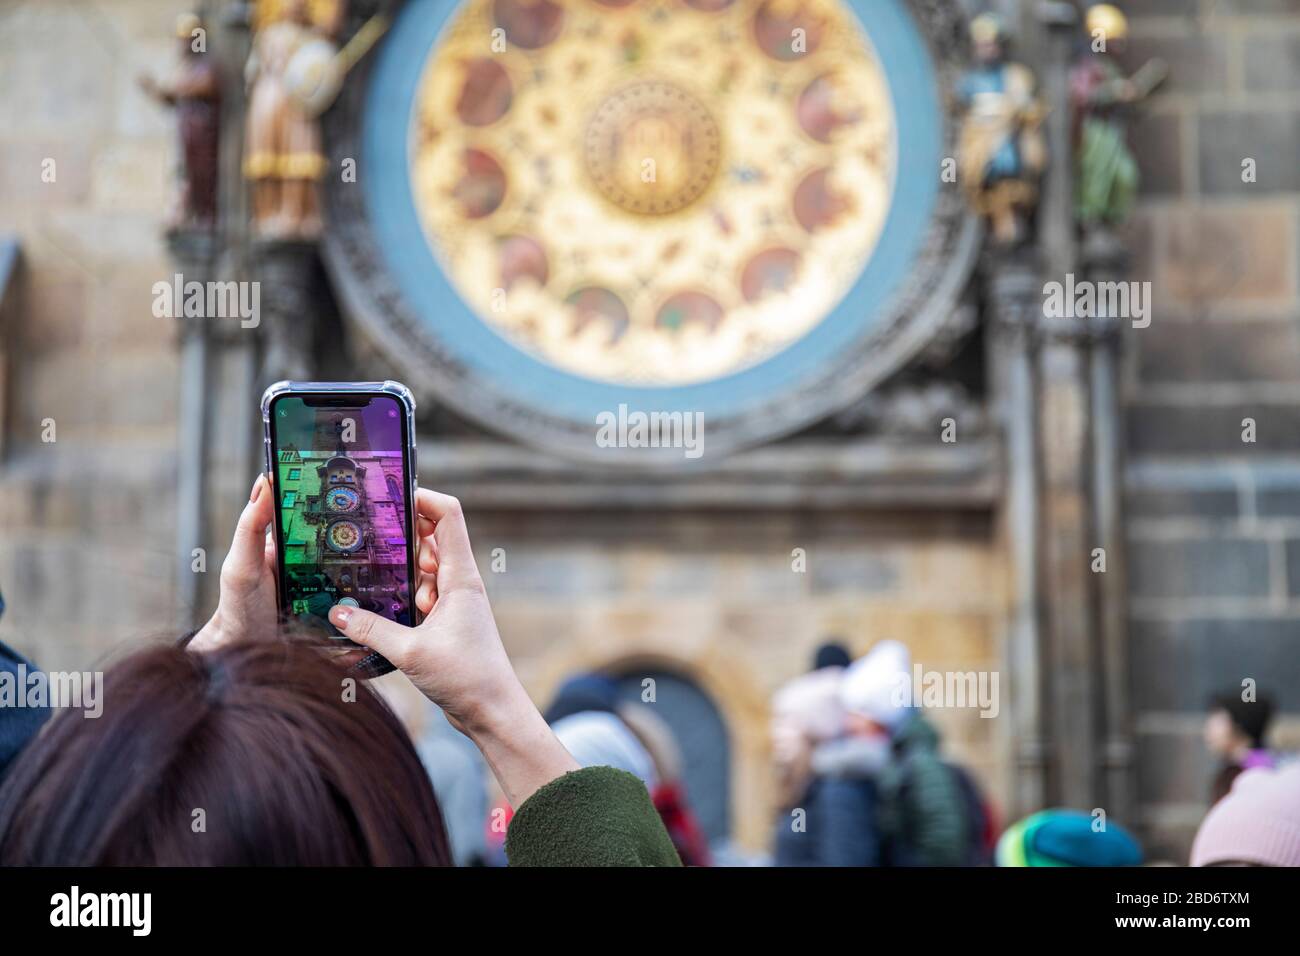 Foto der astronomischen Uhr mit smartphone, Altstädter Rathaus, Prag, Tscechische Republik Foto Stock